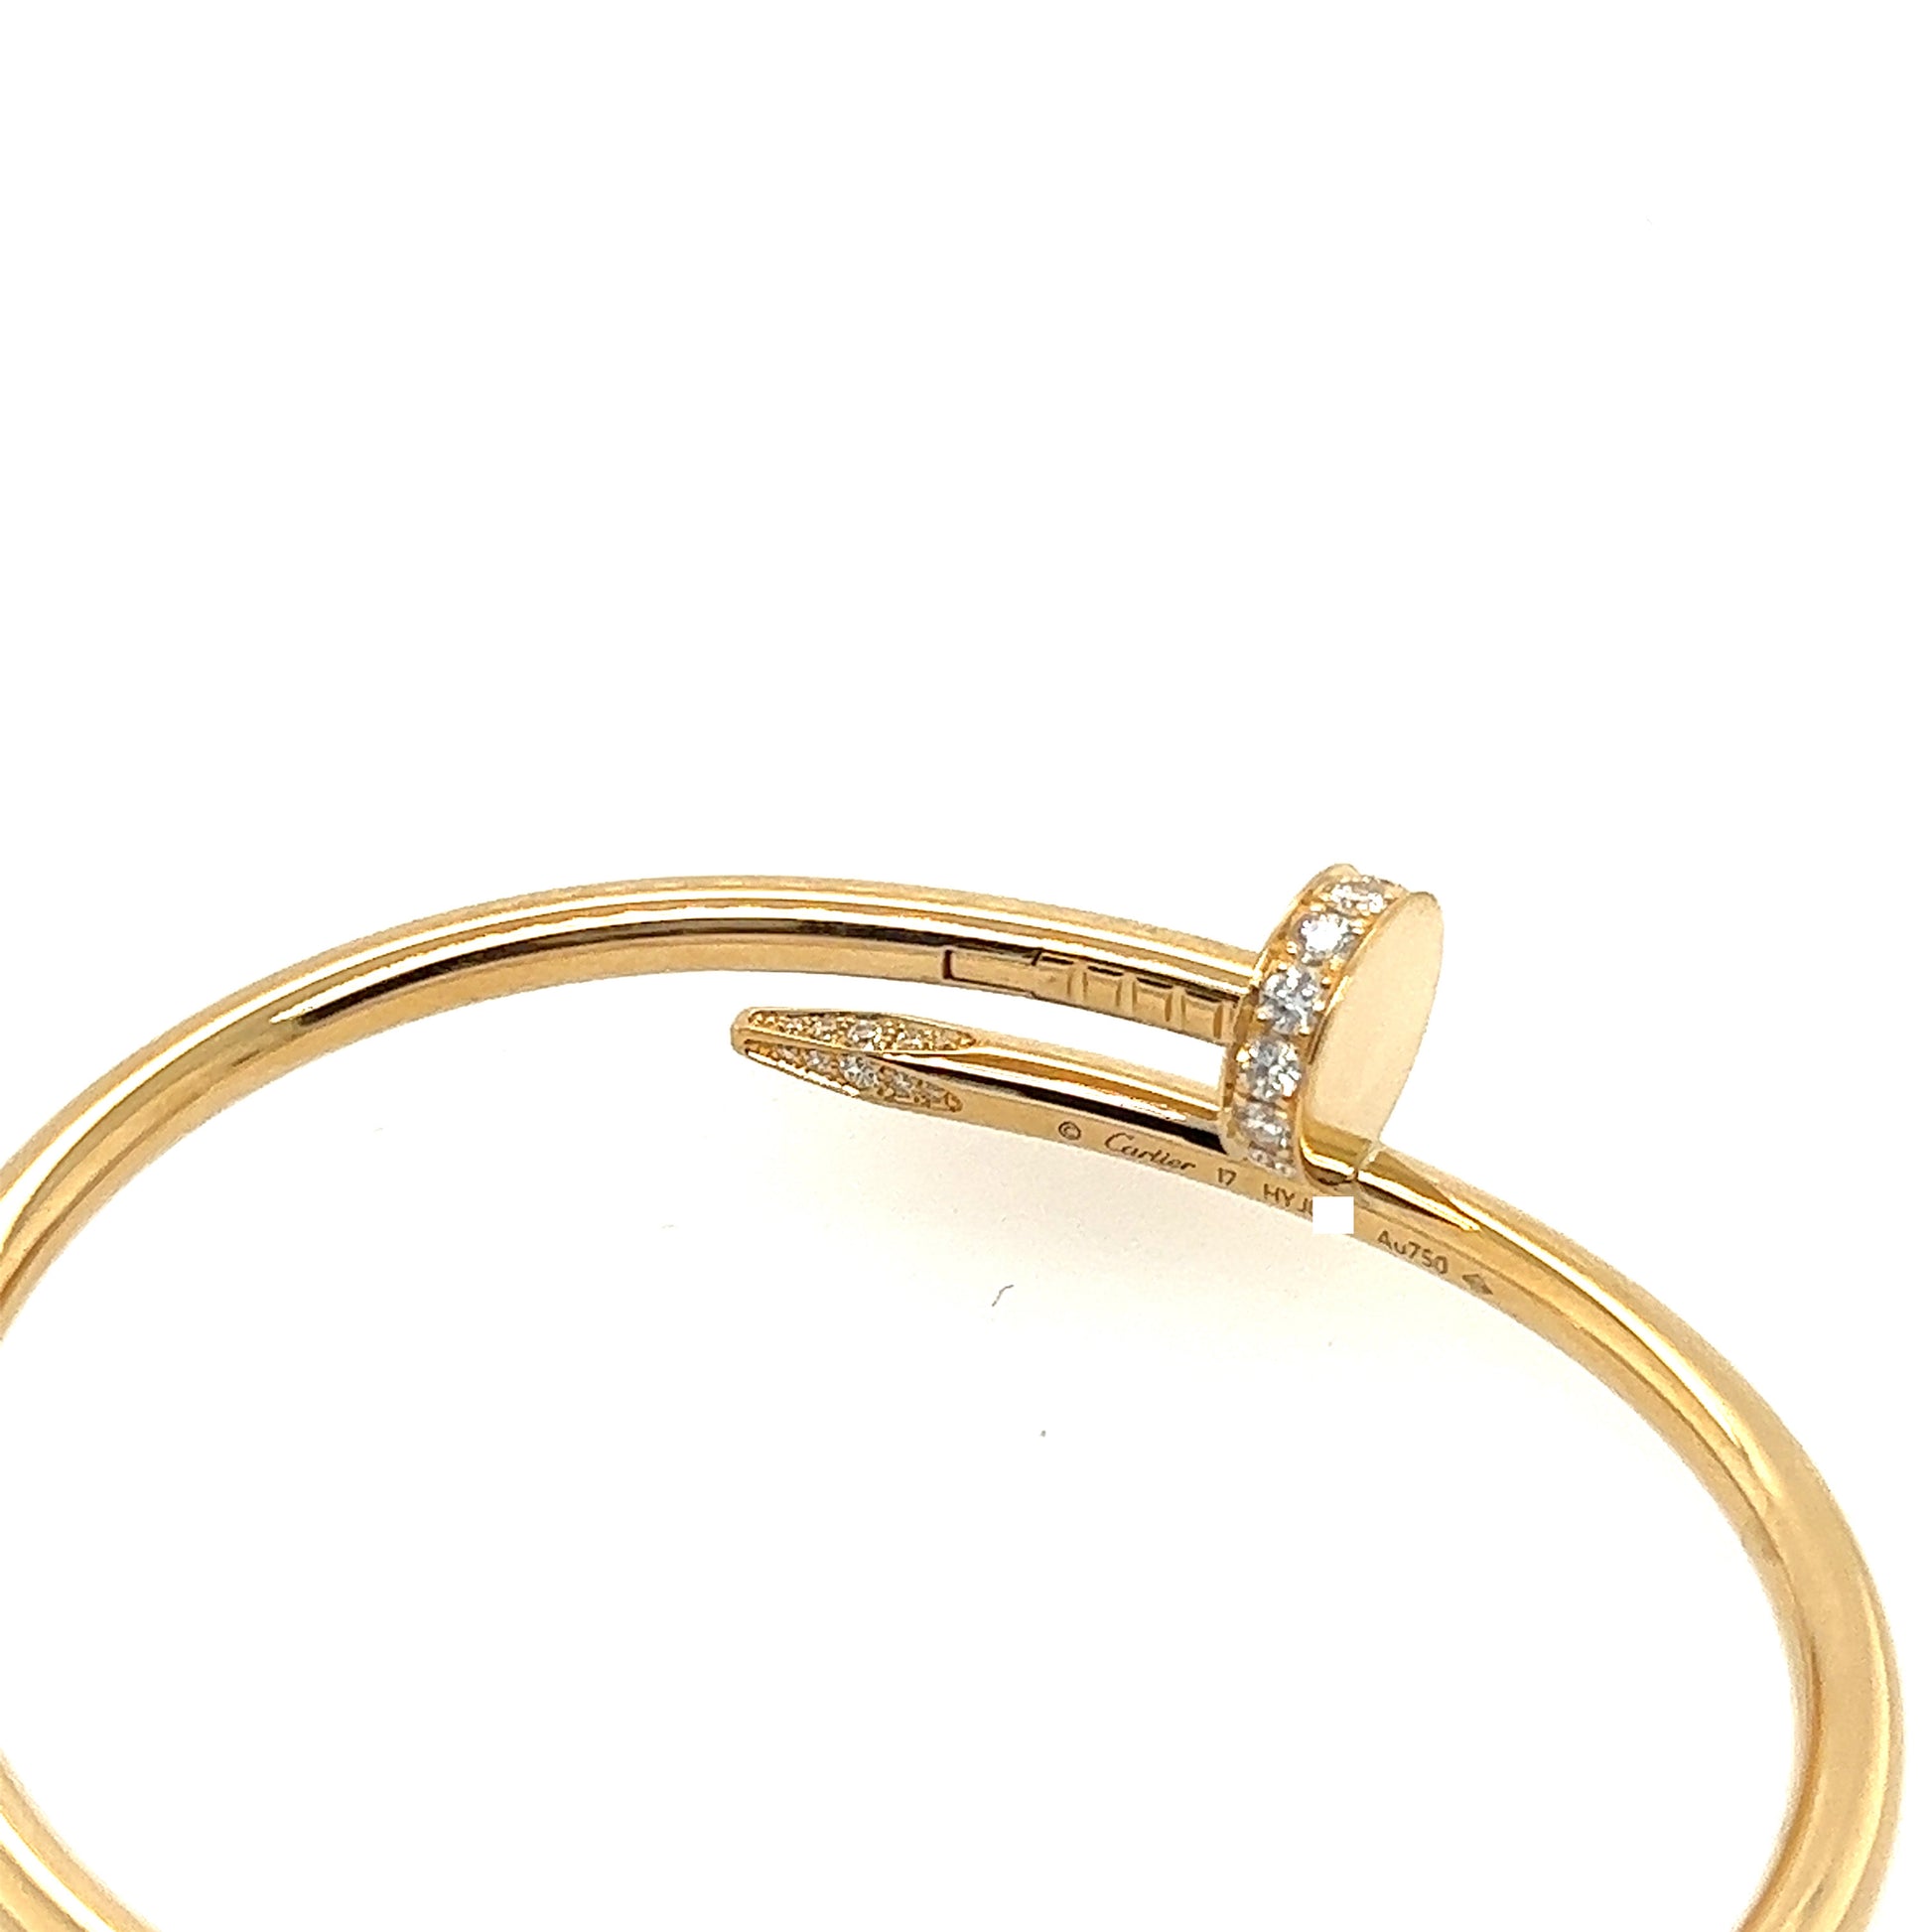 CARTIER Juste Un Clou Nail DIAMOND Bracelet 18K Yellow Gold Size 16 AUTH  W/CERT